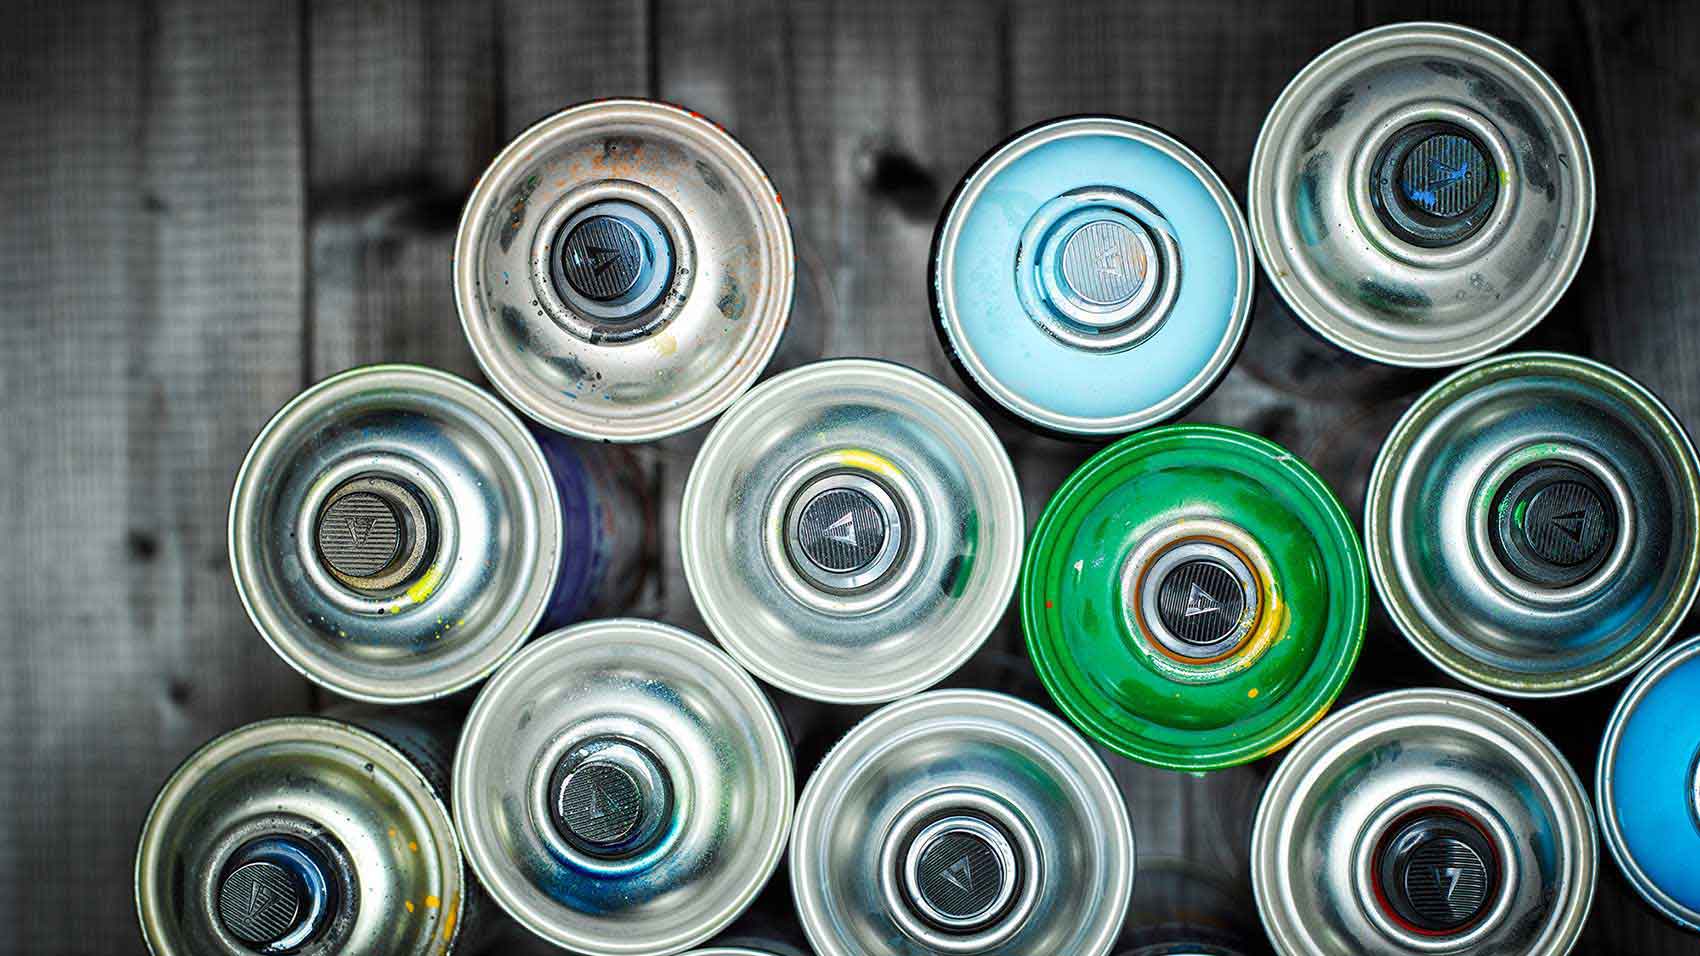 El programa de reciclaje de productos de SC Johnson ayudó a los trabajadores de desechos a clasificar y separar las latas de aerosol para reciclaje de otros materiales.